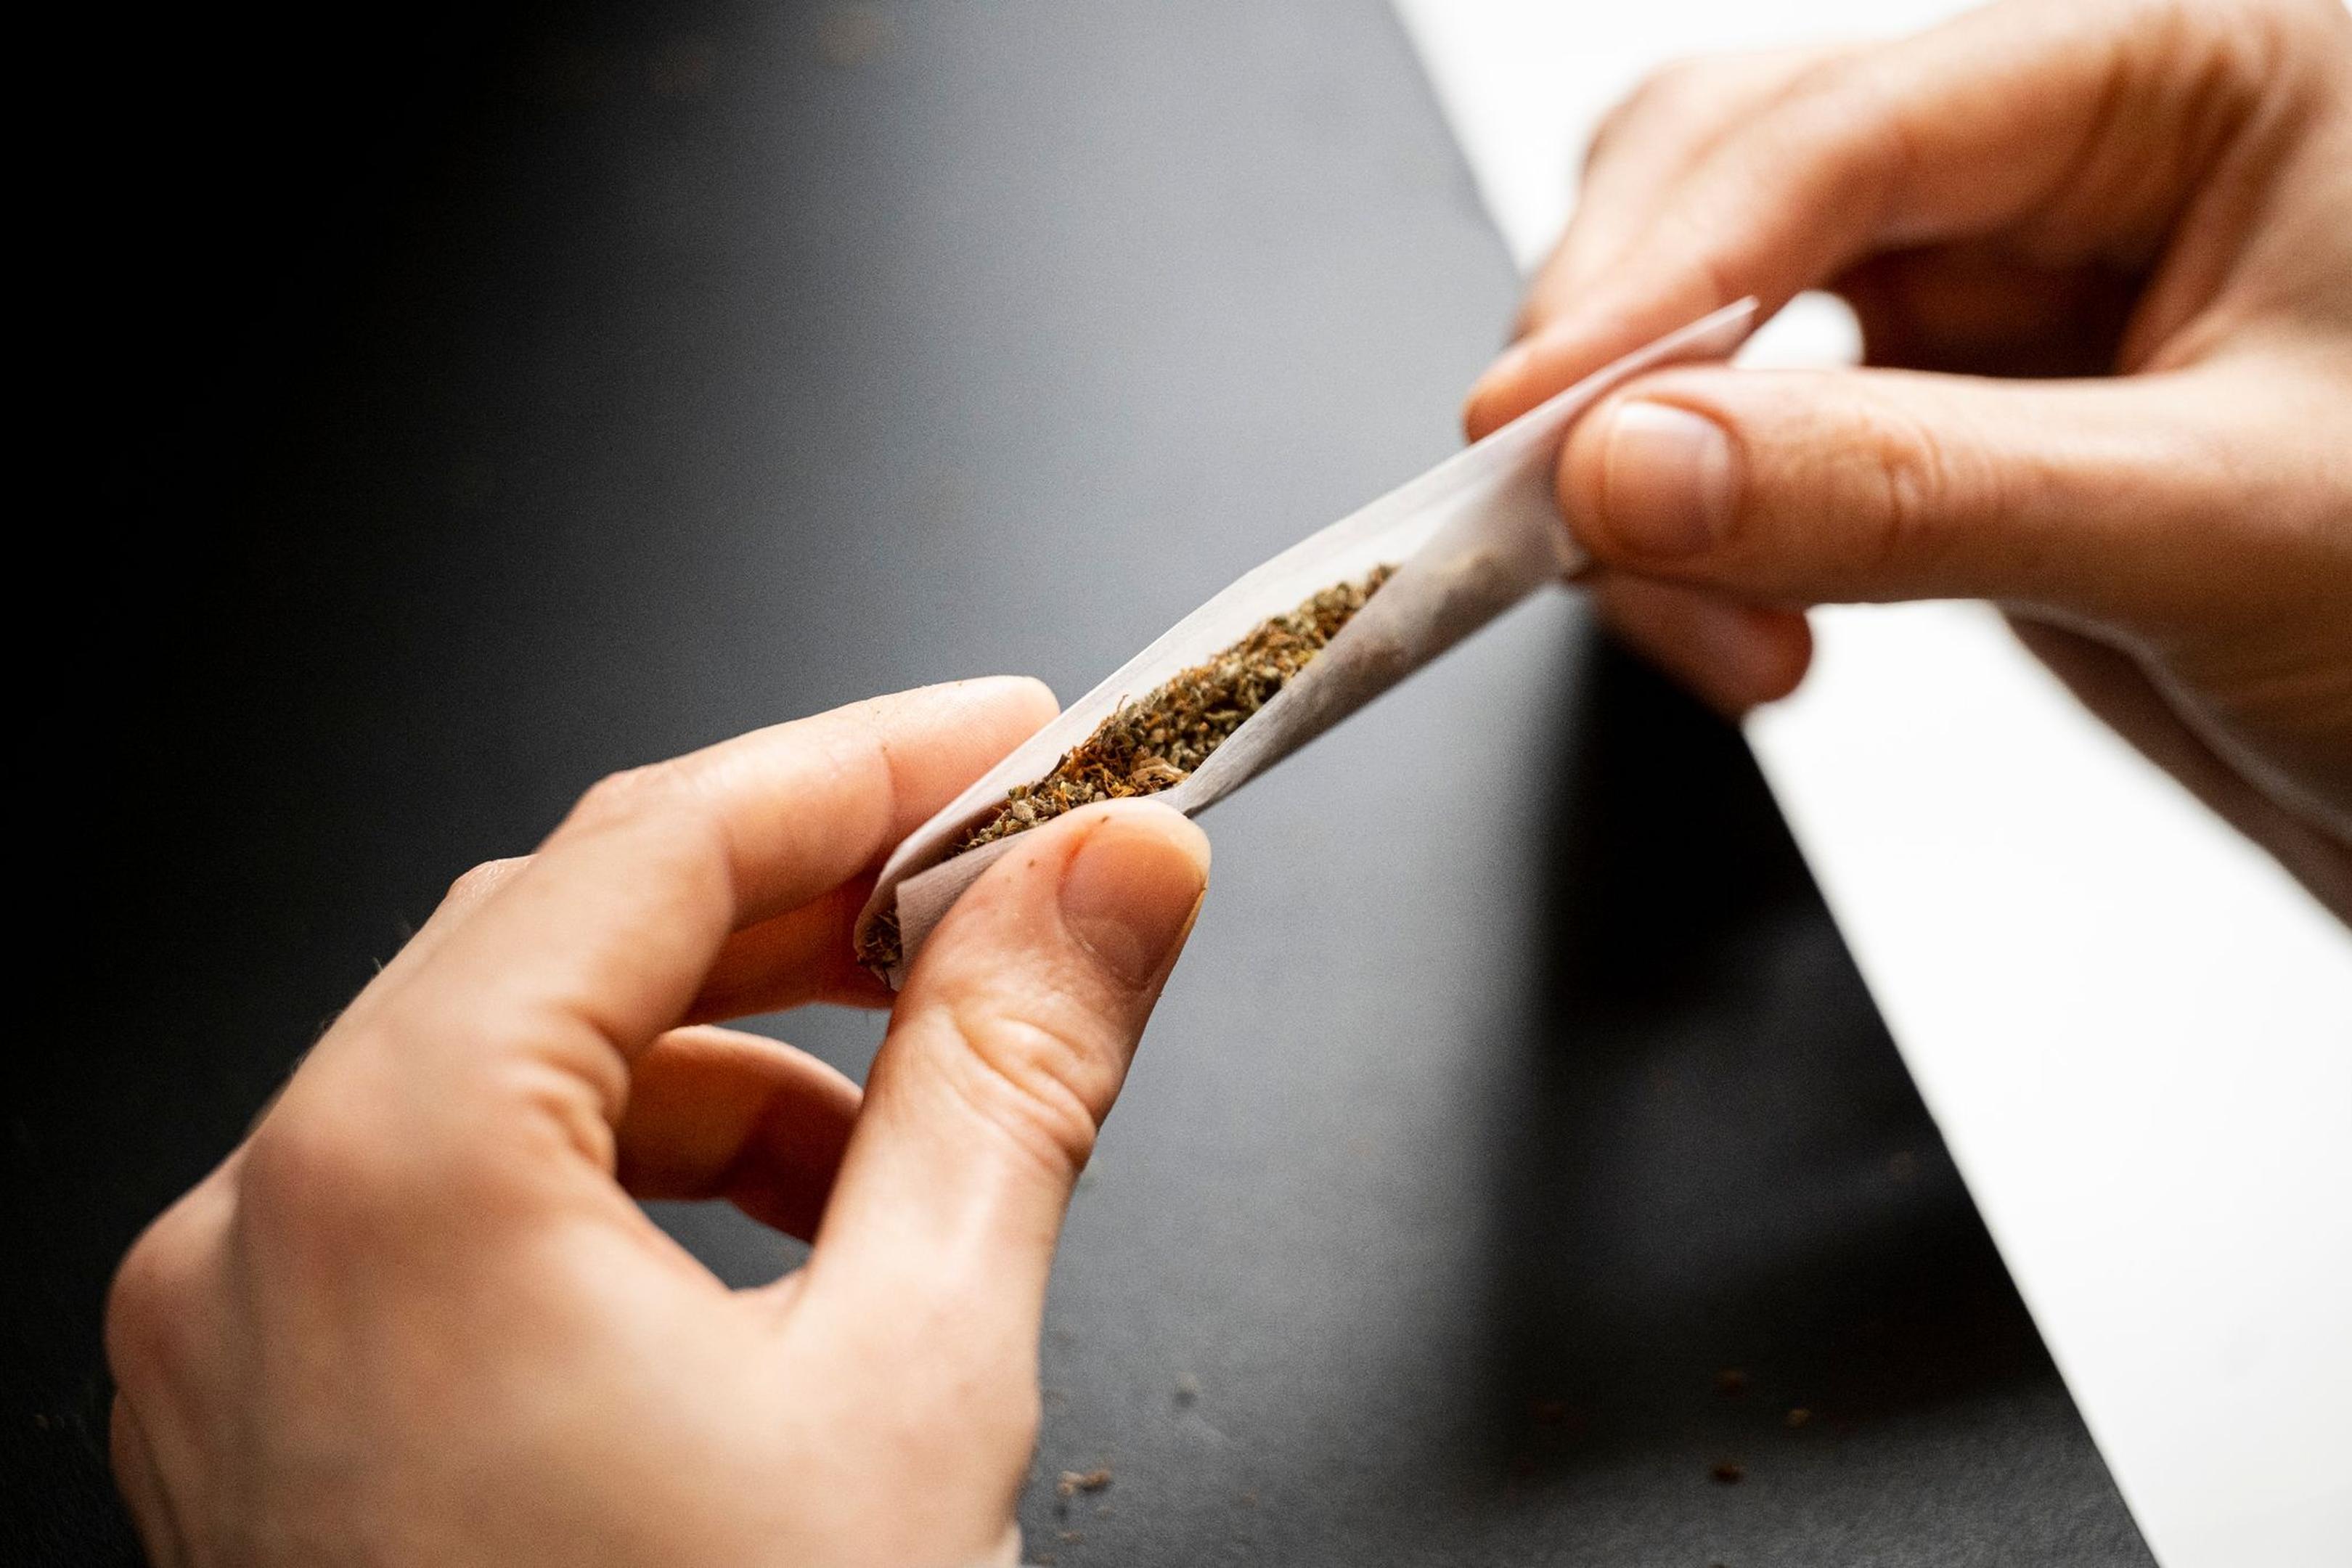 Die Cannabis-Legalisierung führt zu kontroversen Diskussionen.